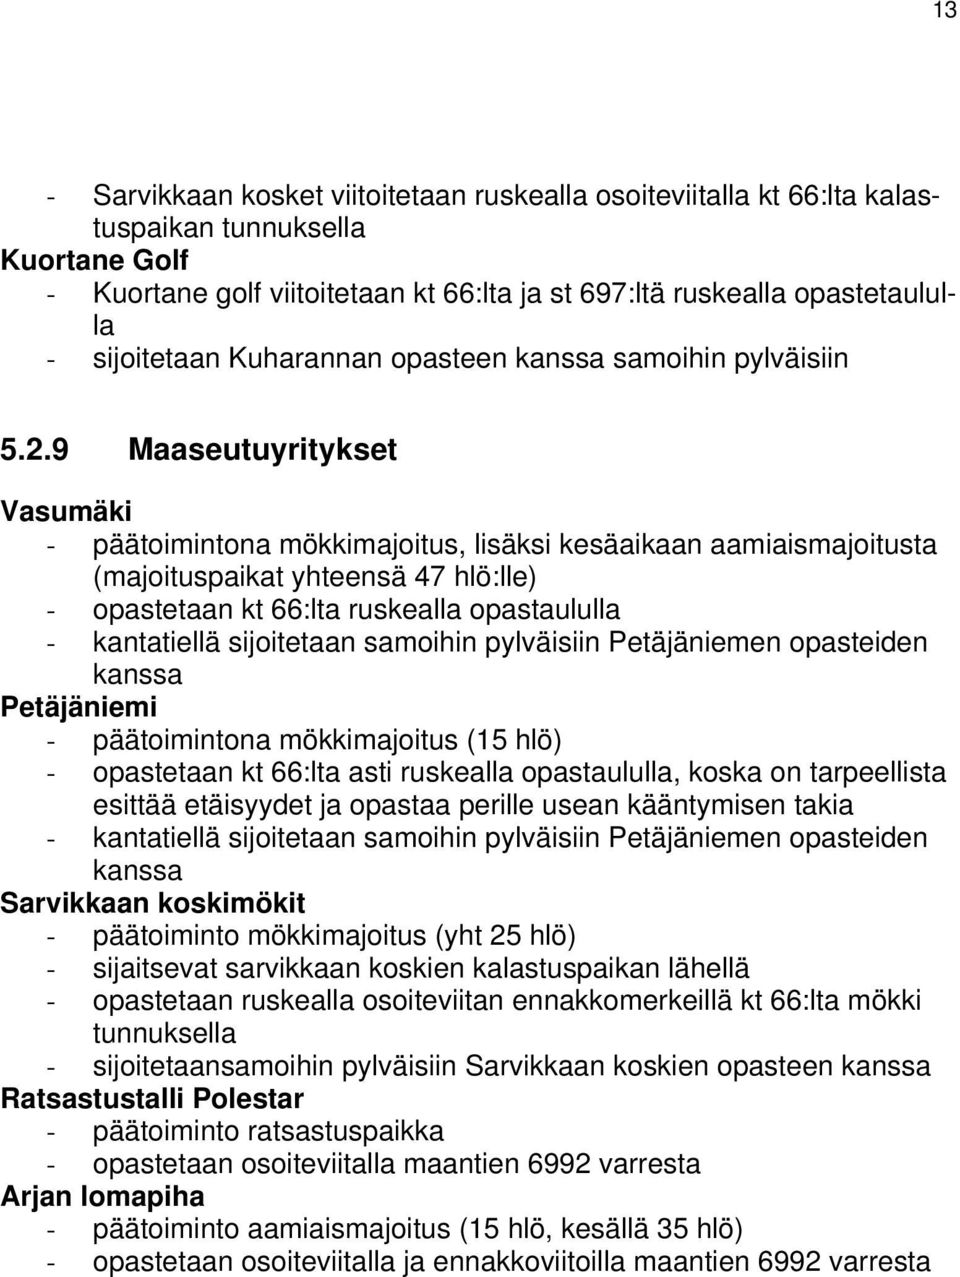 9 Maaseutuyritykset Vasumäki - päätoimintona mökkimajoitus, lisäksi kesäaikaan aamiaismajoitusta (majoituspaikat yhteensä 47 hlö:lle) - opastetaan kt 66:lta ruskealla opastaululla - kantatiellä